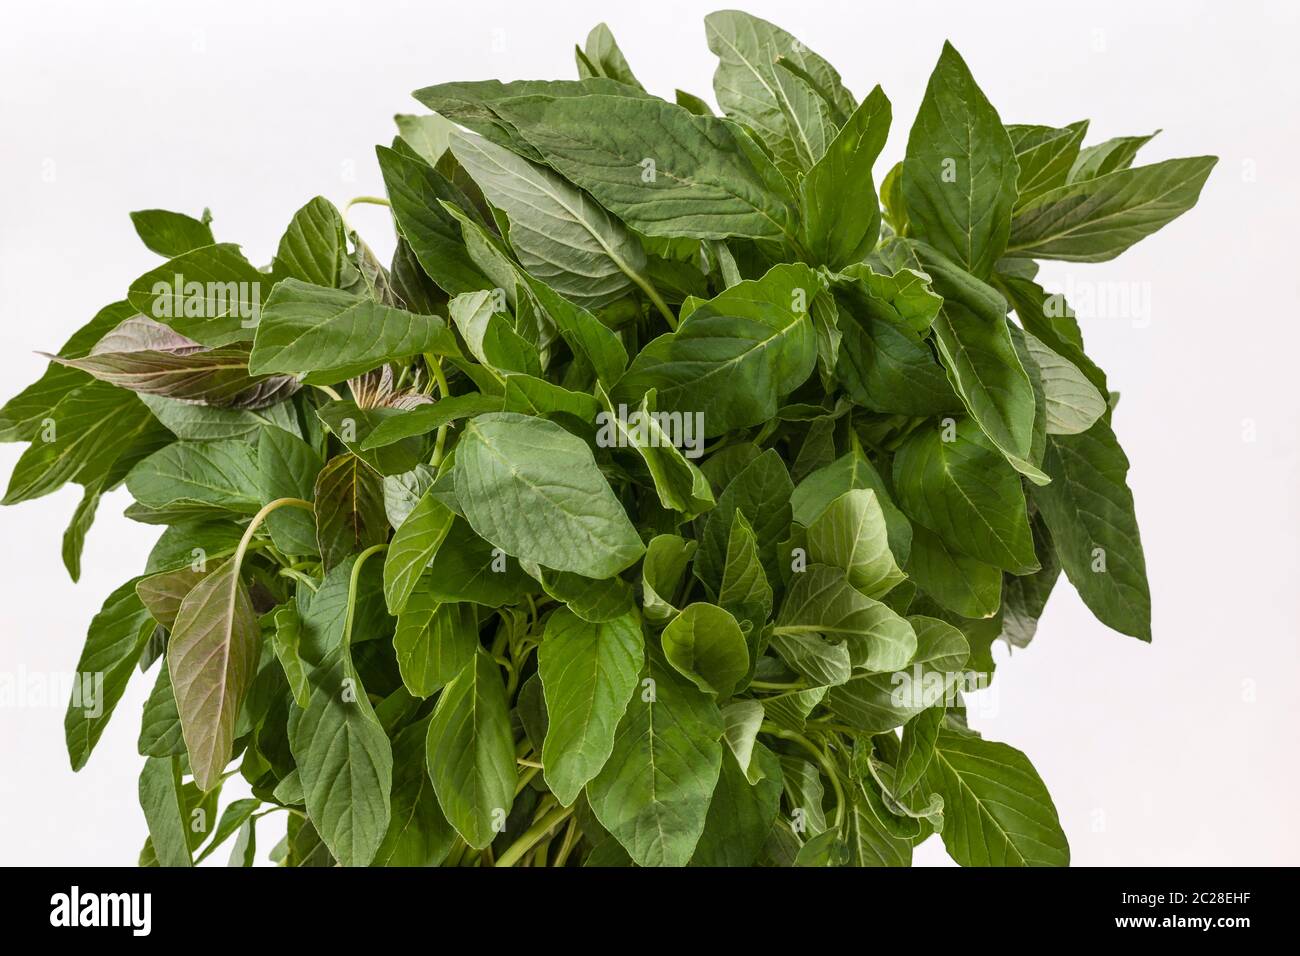 Tas de feuilles d'amarante verte (Amaranthus viridis) sur un fond blanc Banque D'Images